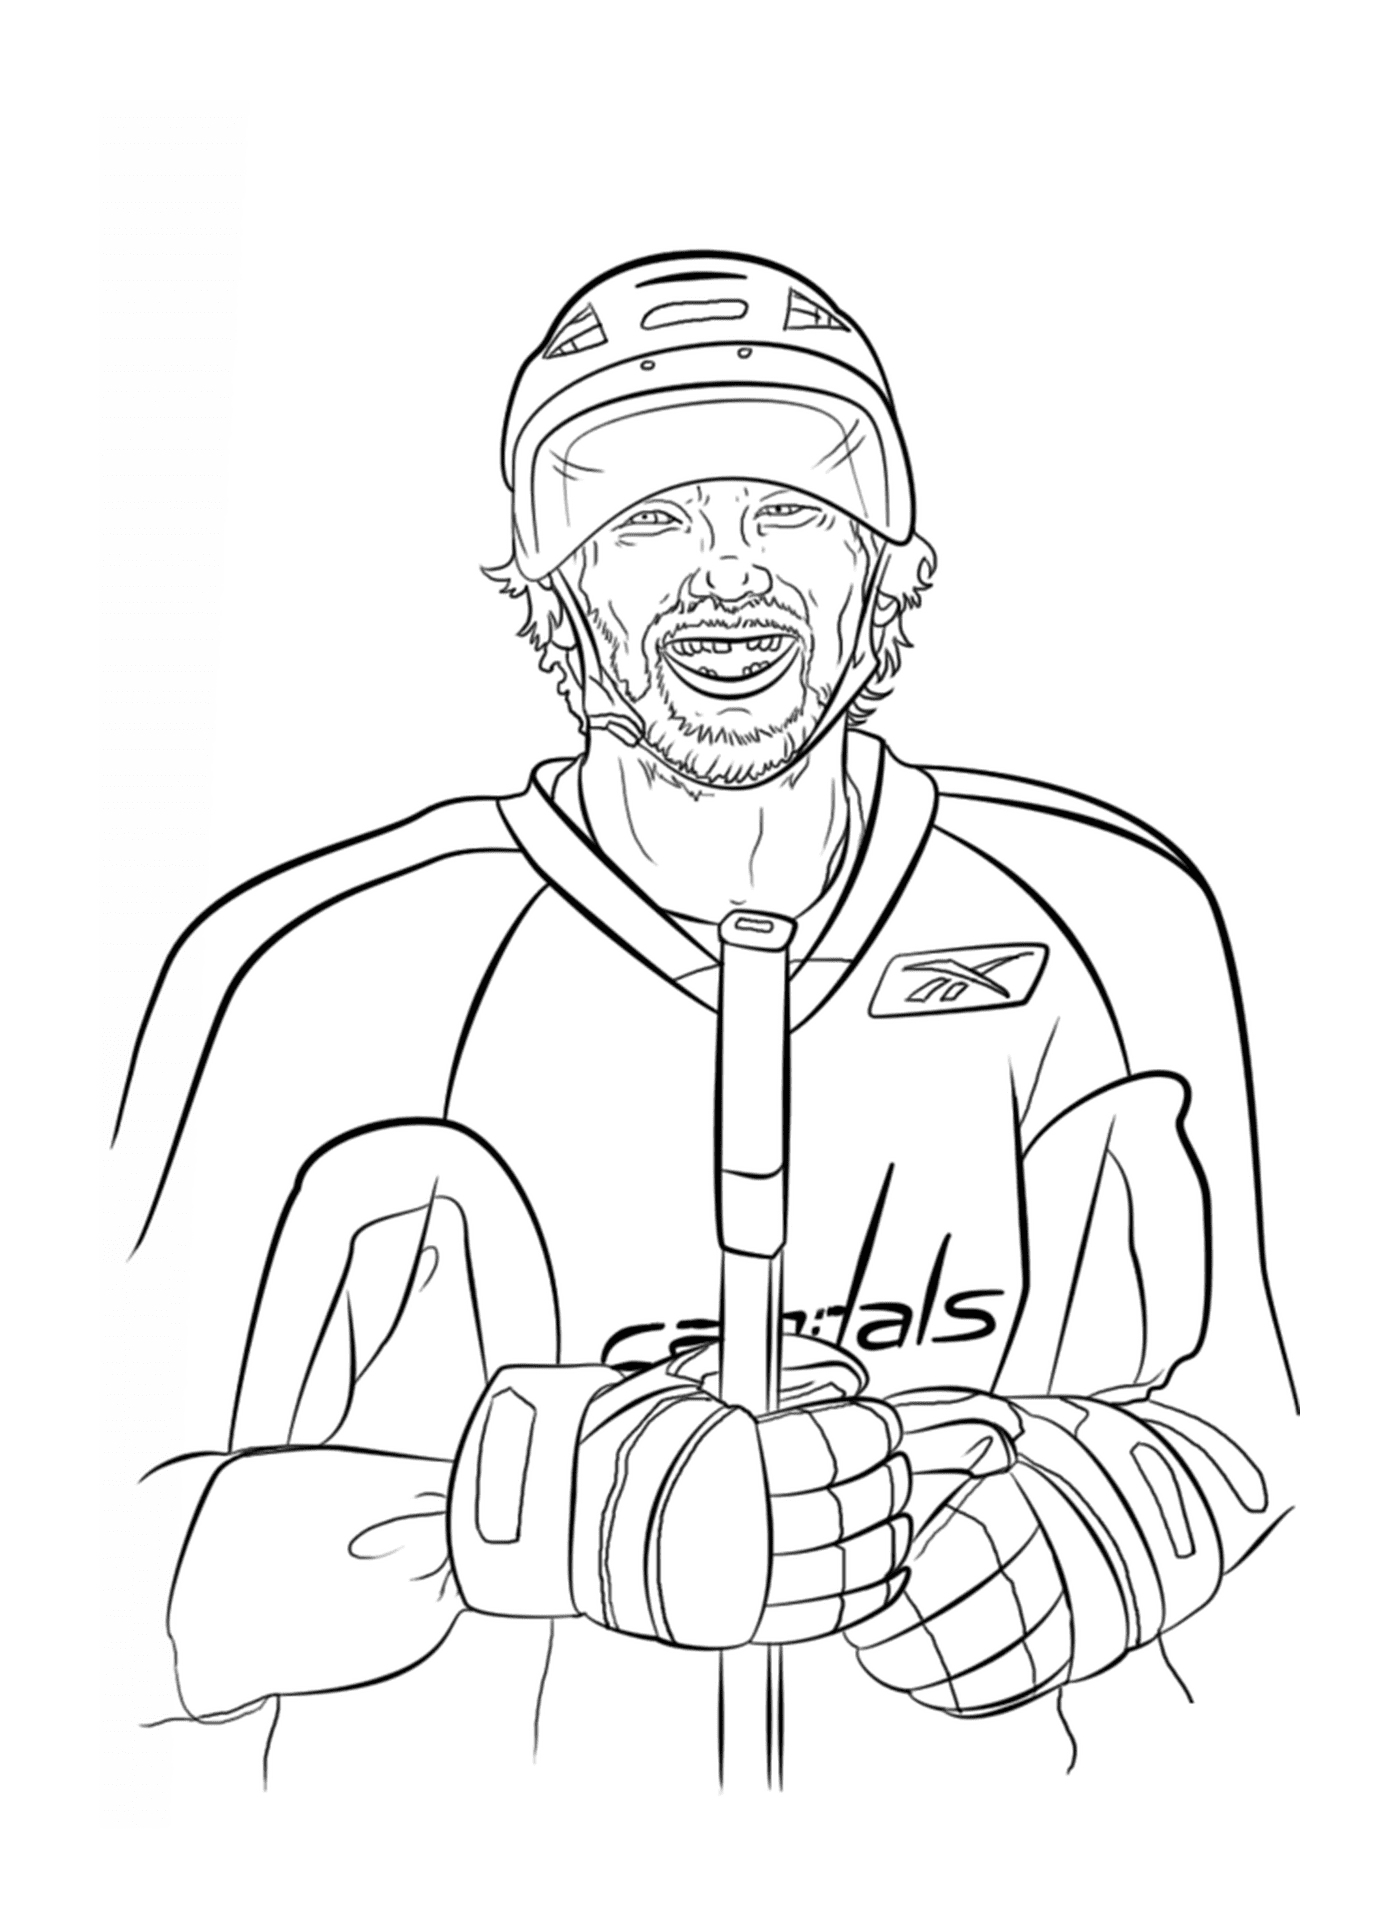  Alex Ovechkin, Eishockeyspieler 